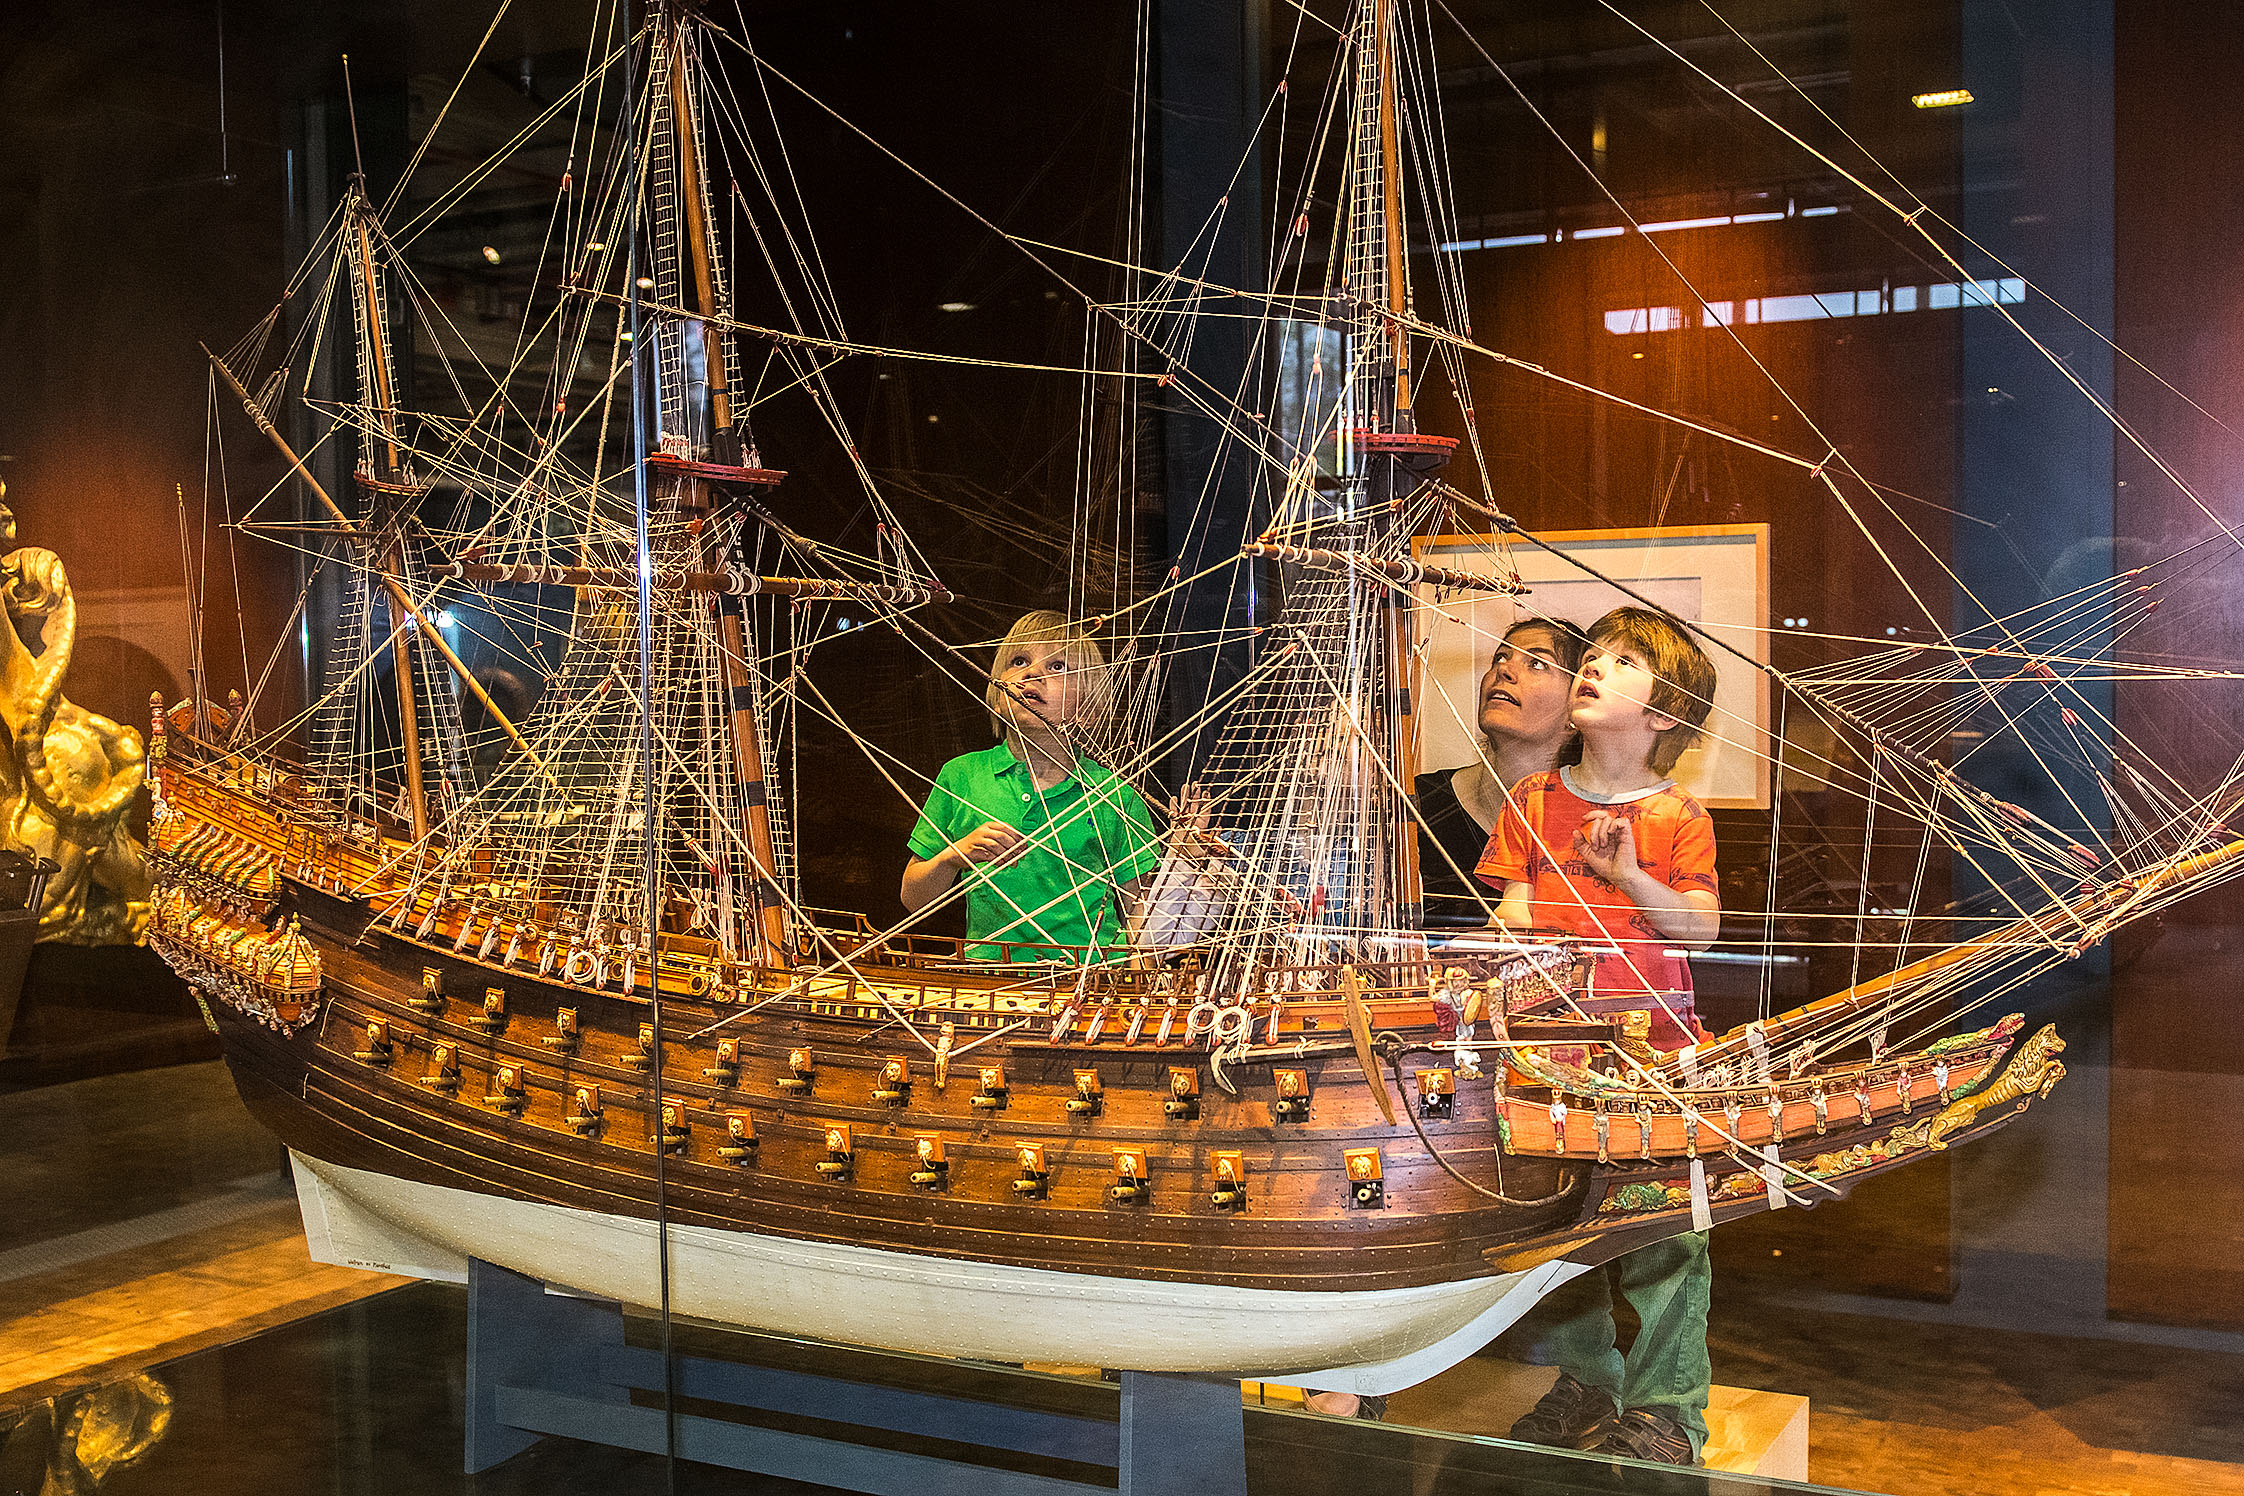 Eine Frau und drei Kinder stehen vor einer Vitrine mit einem etwa drei Meter breiten und zwei Meter hohen Modell eines dreimastigen Segelschiffs. Das Modell besteht aus Holz, der Bauch des Schiffs ist weiß lackiert.